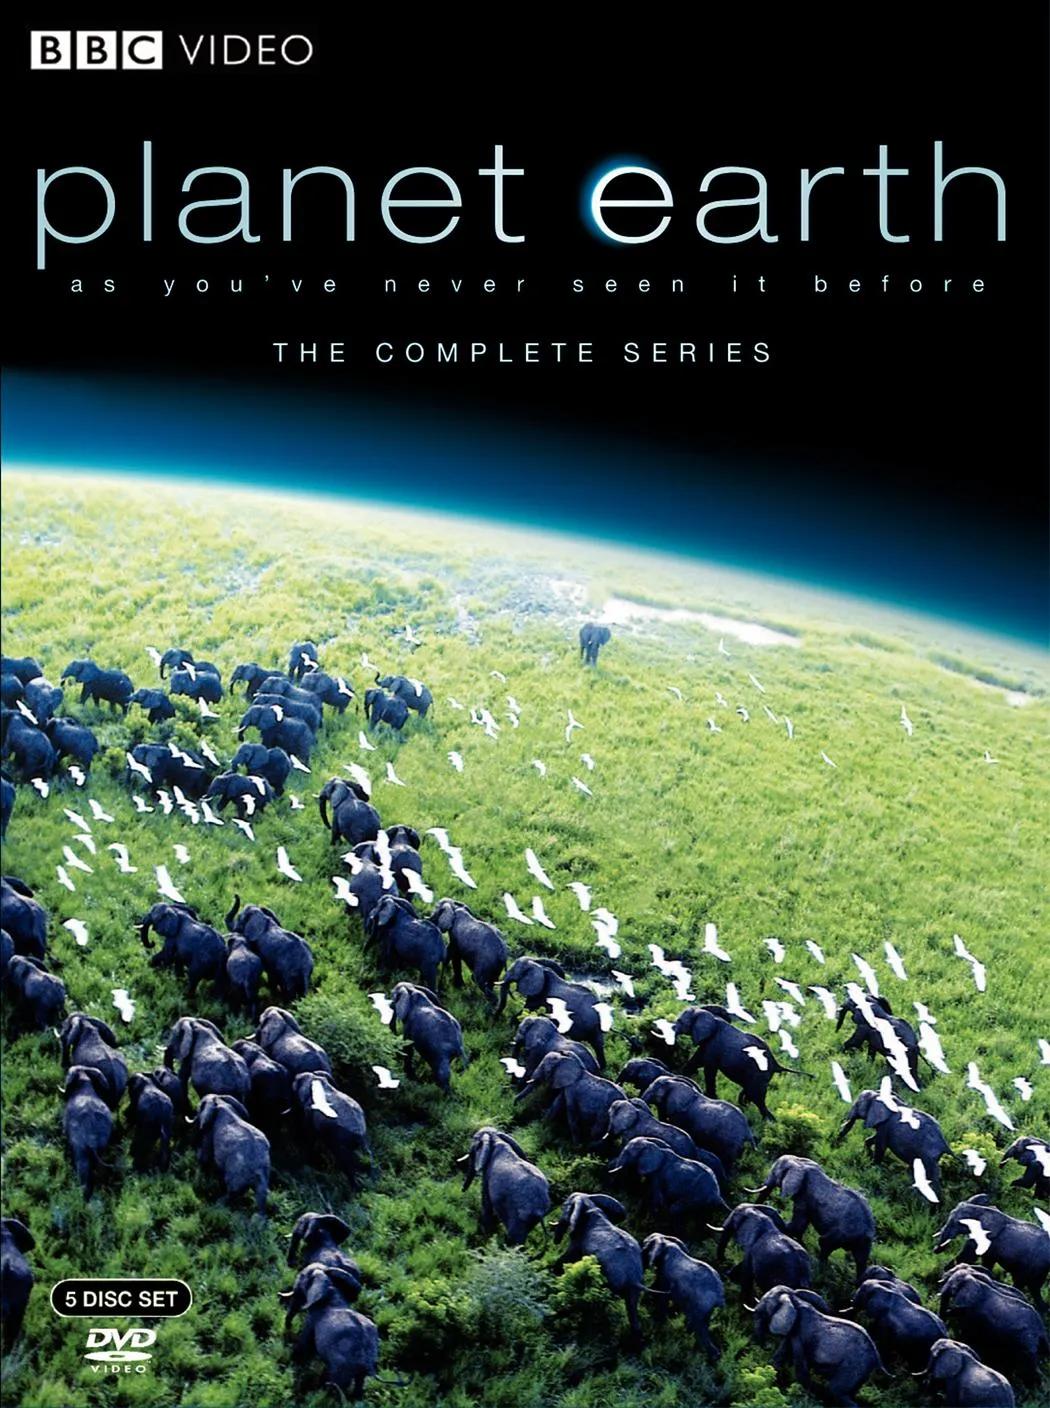 مستند سیاره زمین